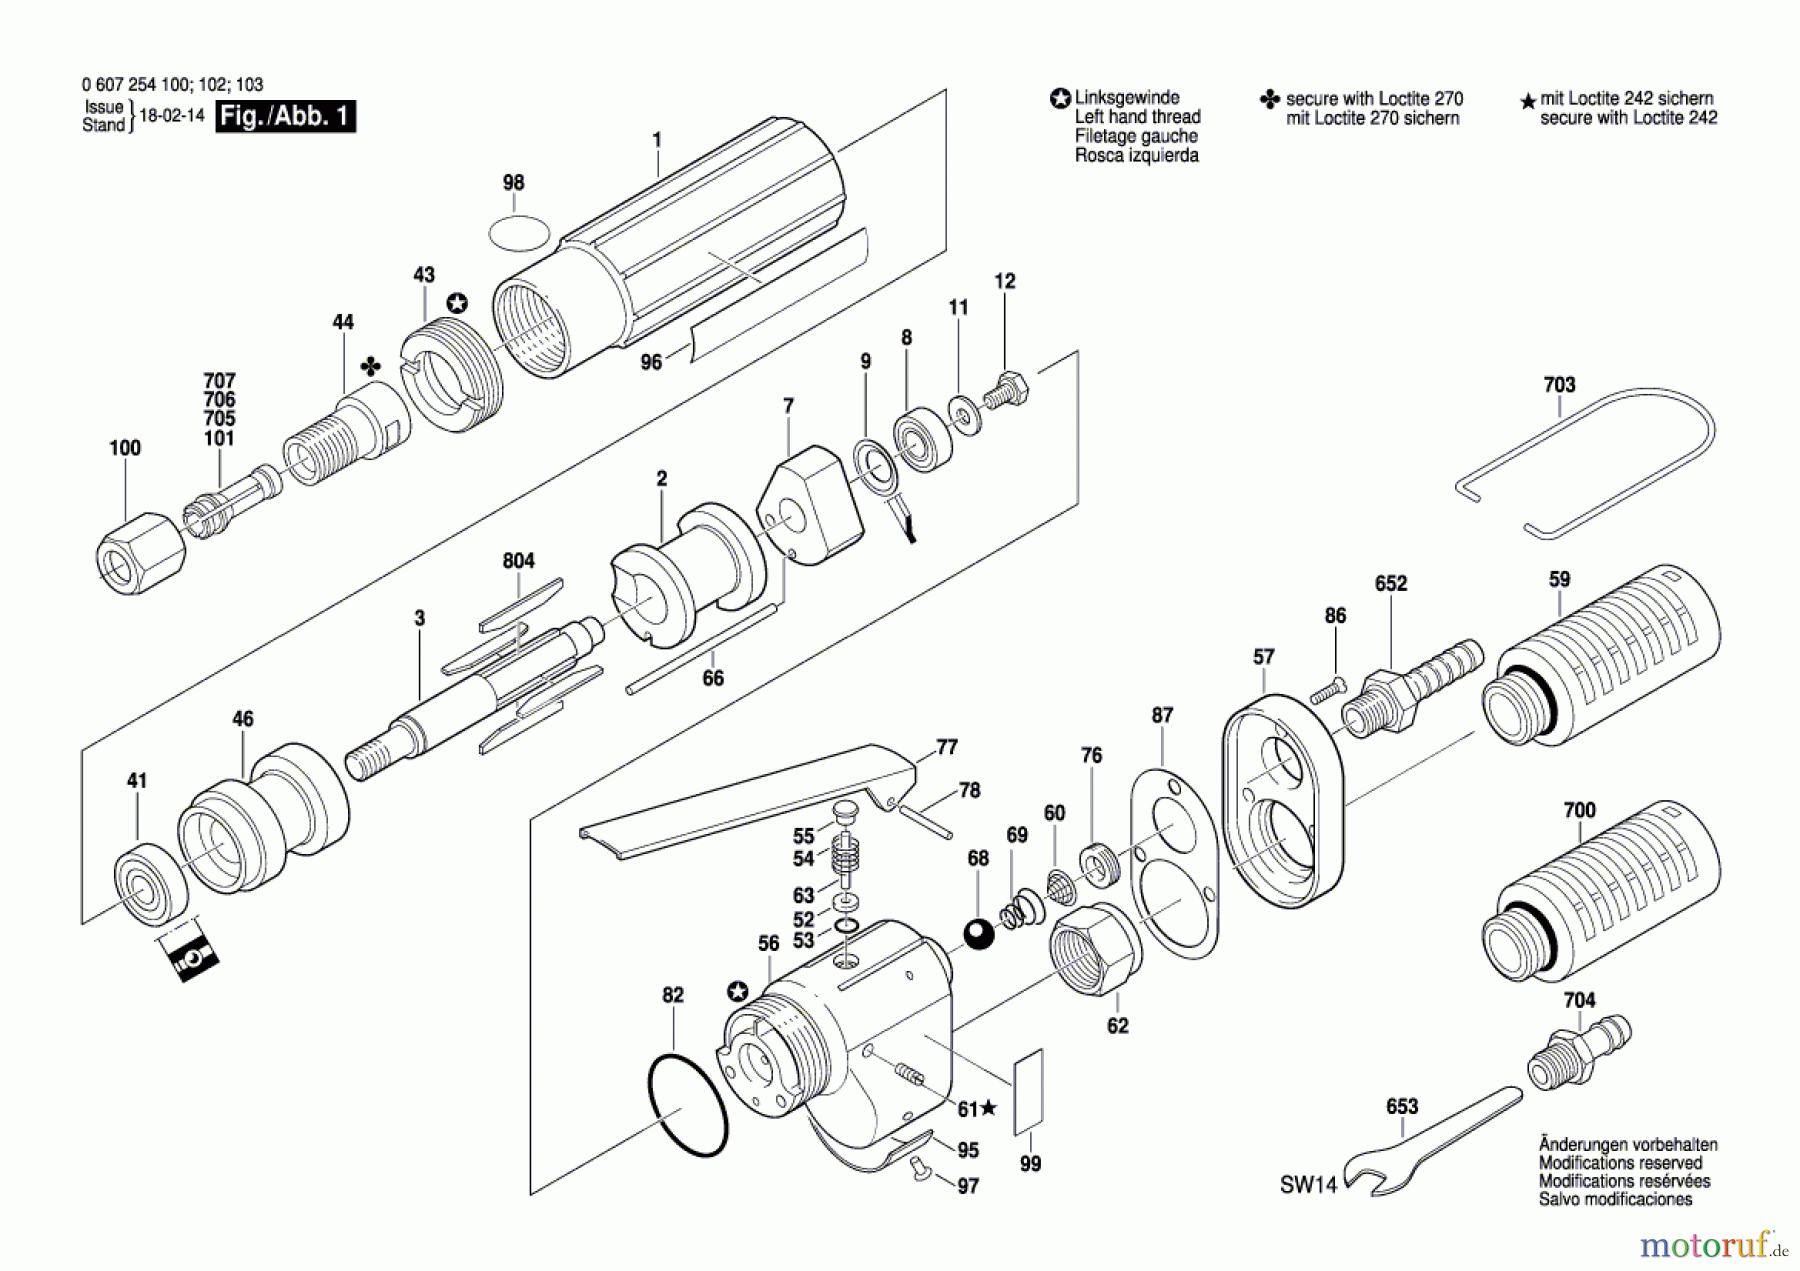  Bosch Werkzeug Hf-Geradschleifer GERADSCHLEIFER 120 WATT-SERIE Seite 1